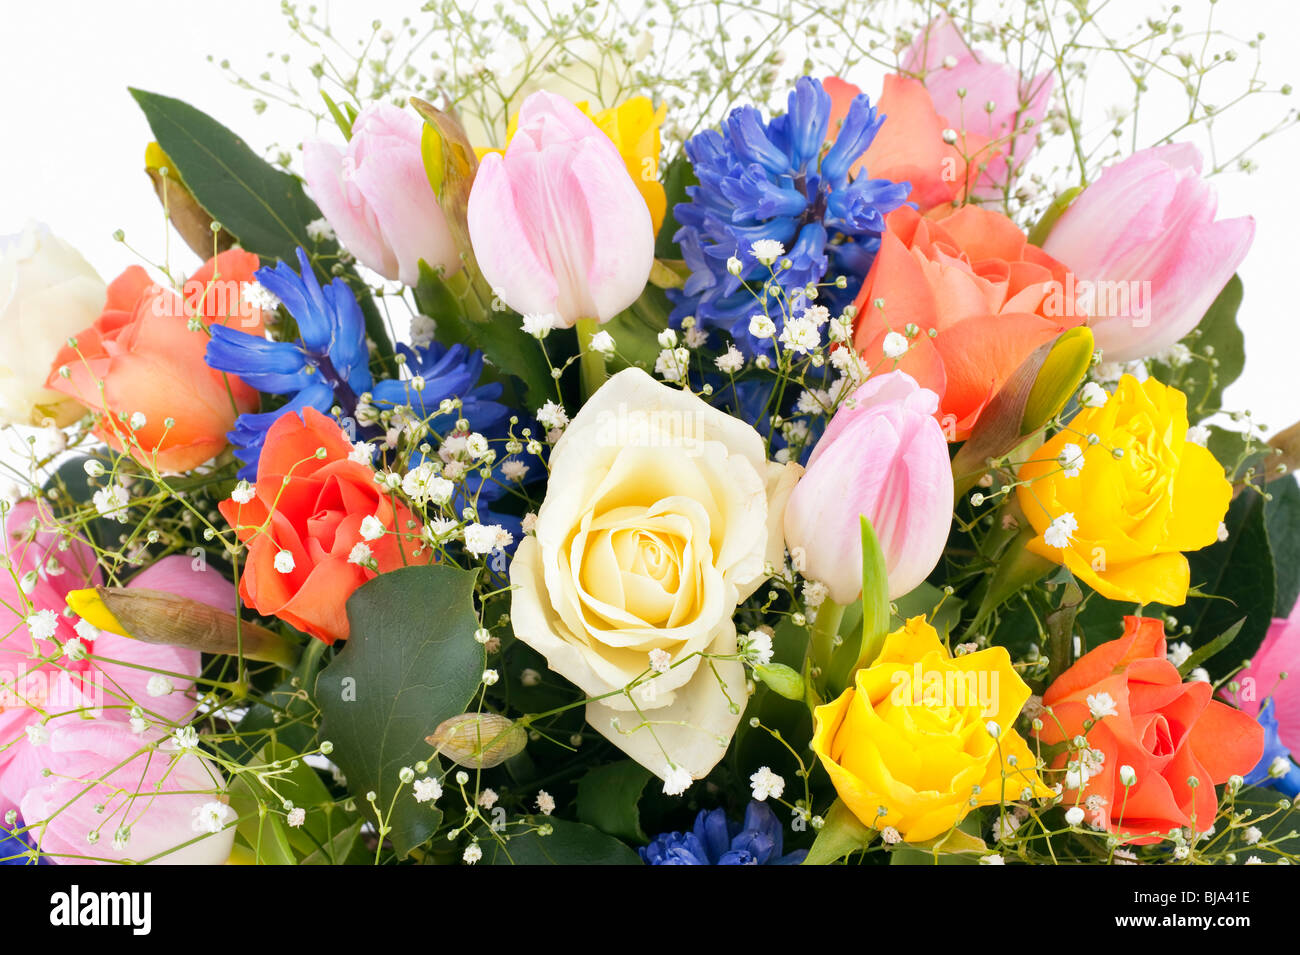 Spring flower arrangement dans un vase avec des roses, tulipes, jacinthes et narcisses feuilles vert Banque D'Images